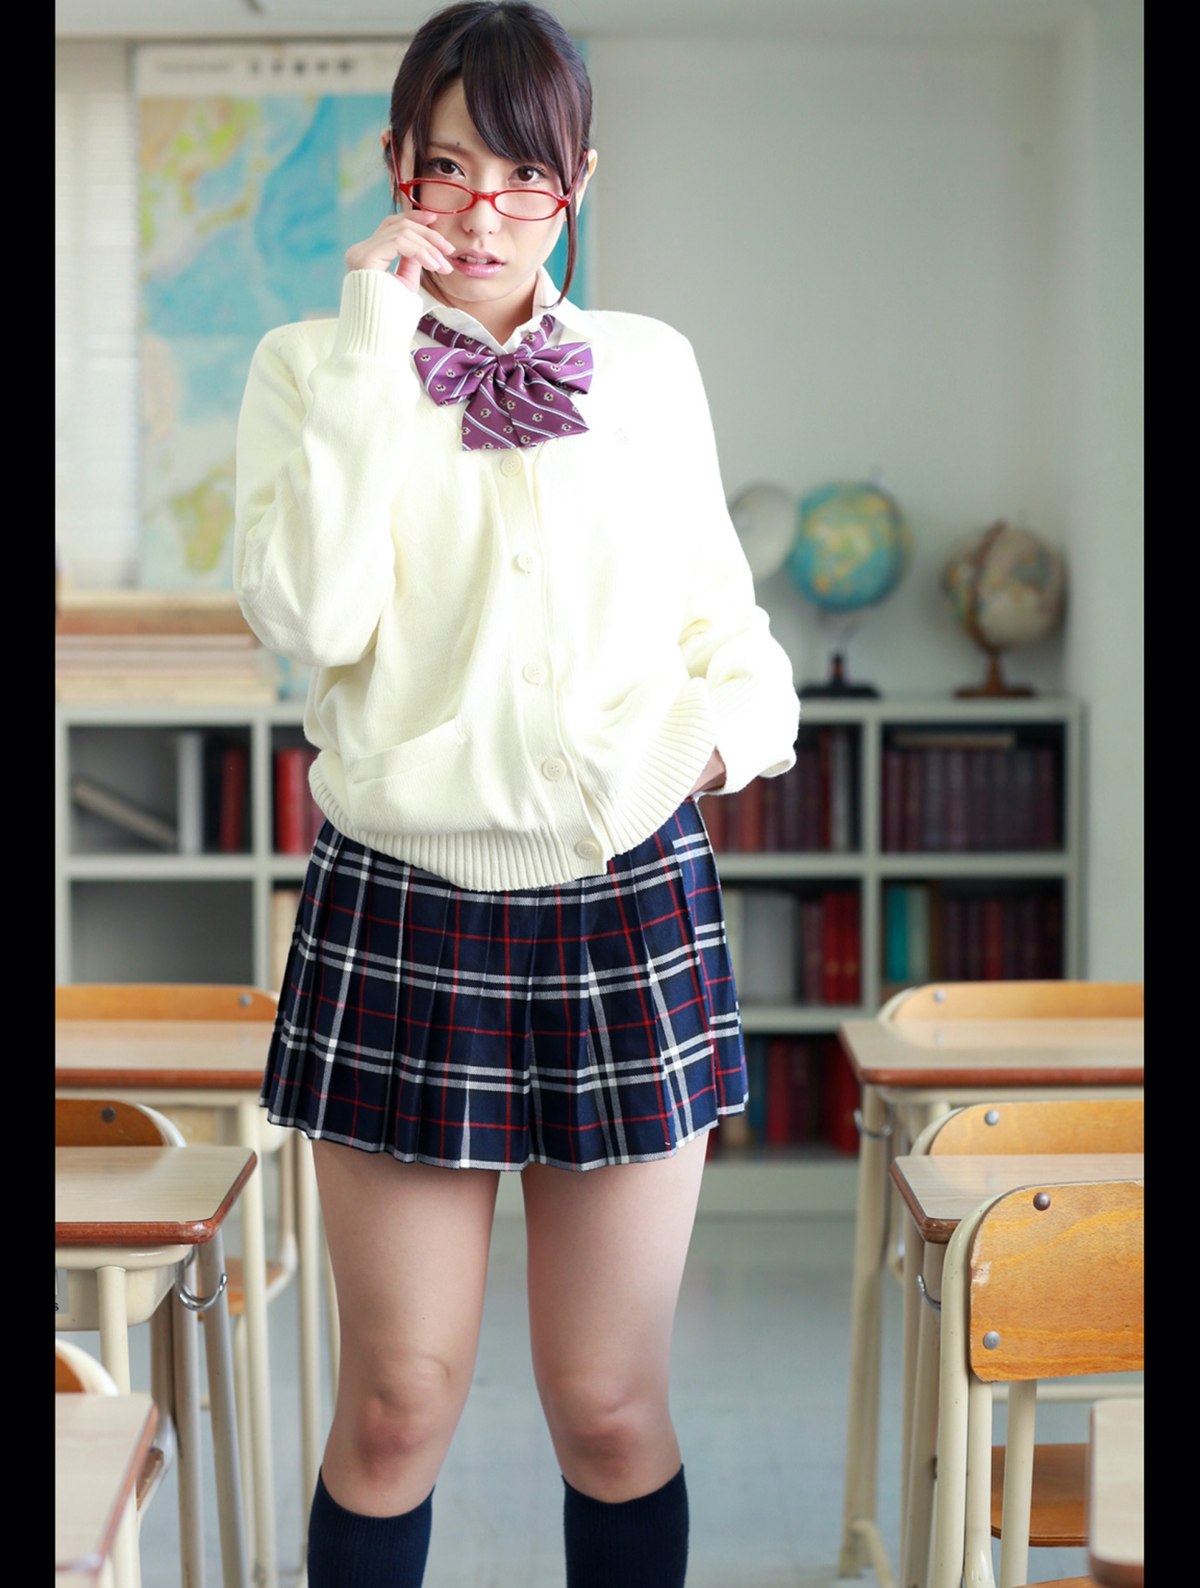 Photobook 2013 10 18 Chika Arimura 有村千佳 Ikenaikoto In The Classroom 0033 5234450394.jpg